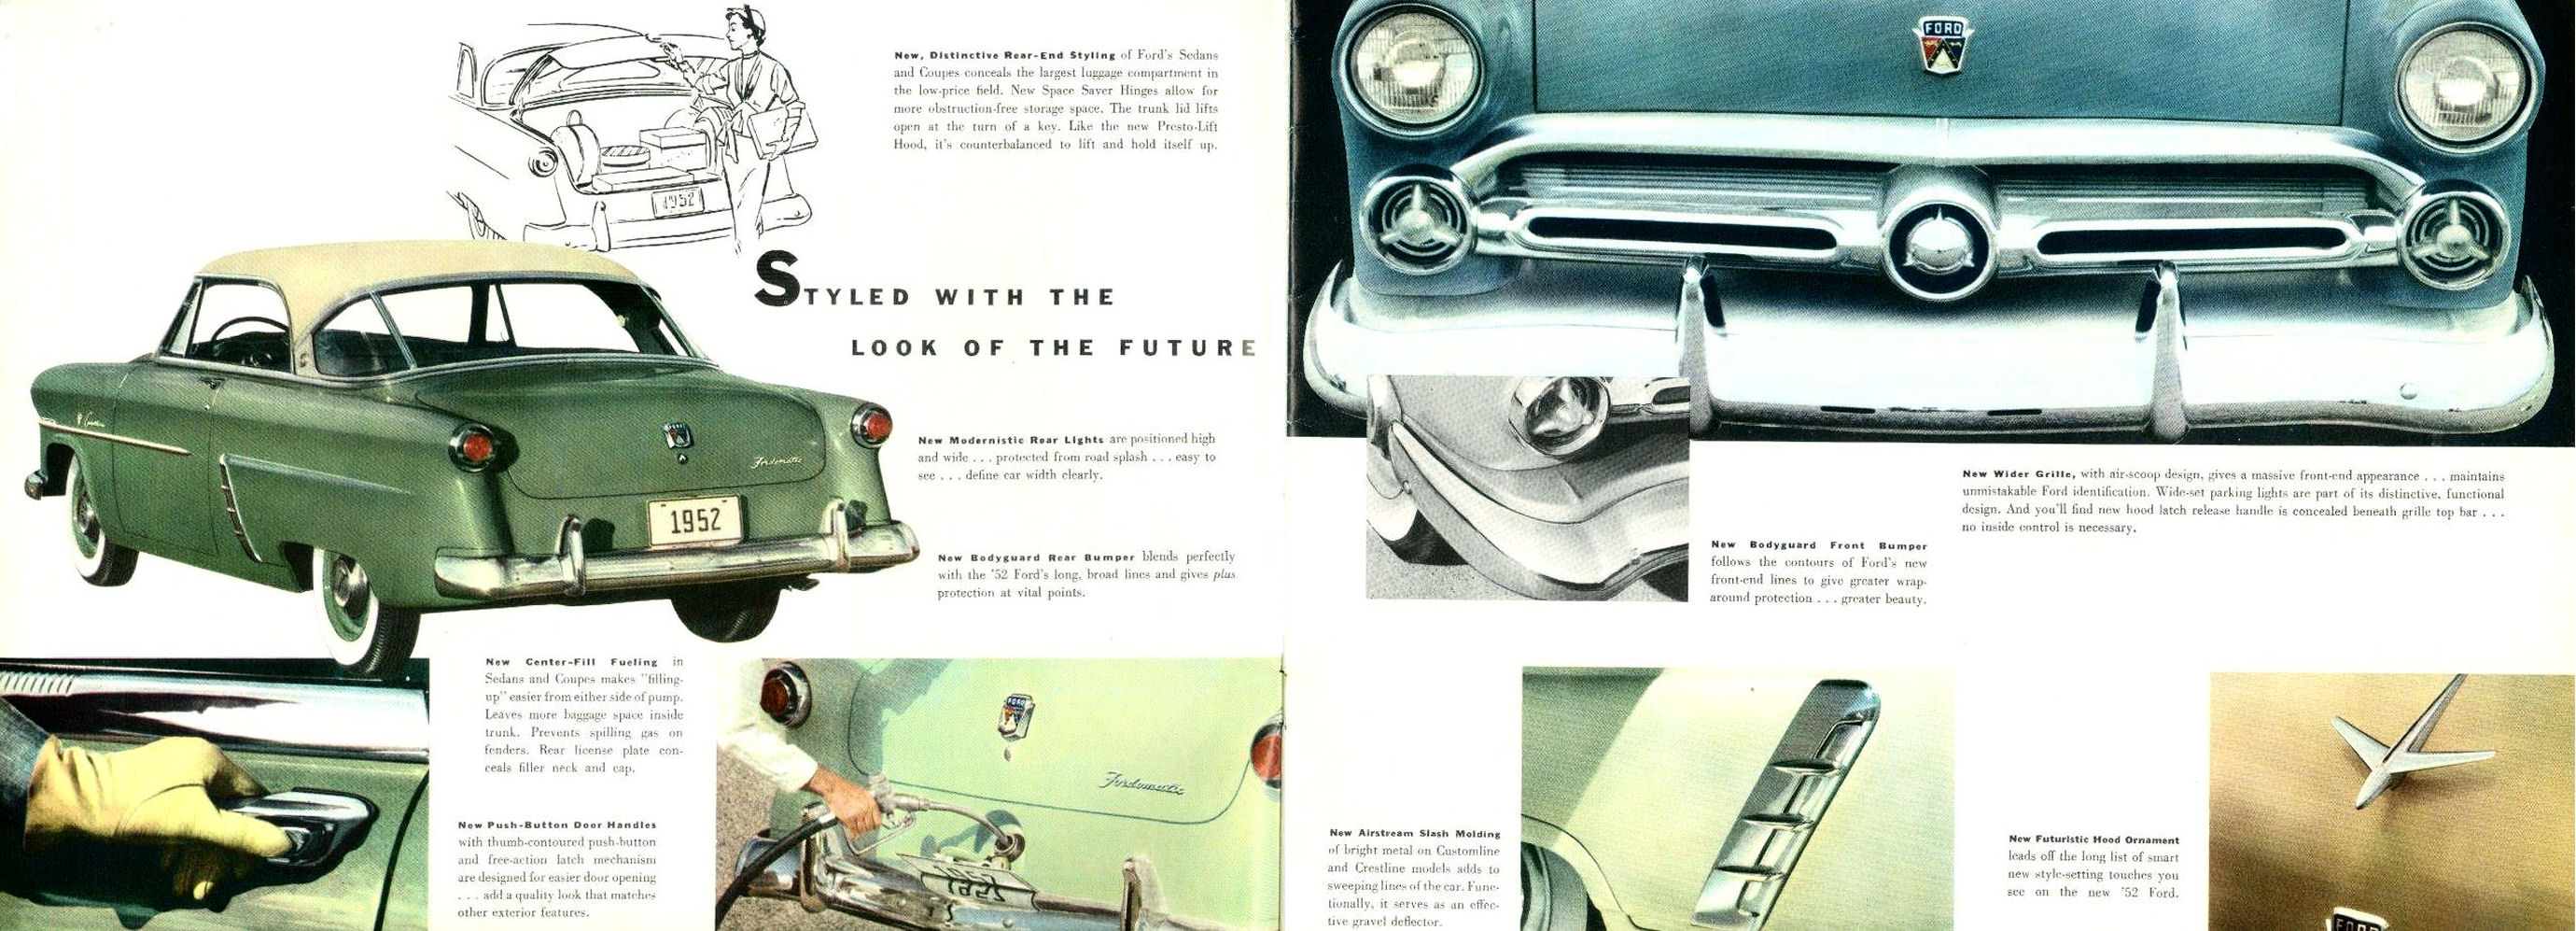 1952_Ford_Full_Line-06-07